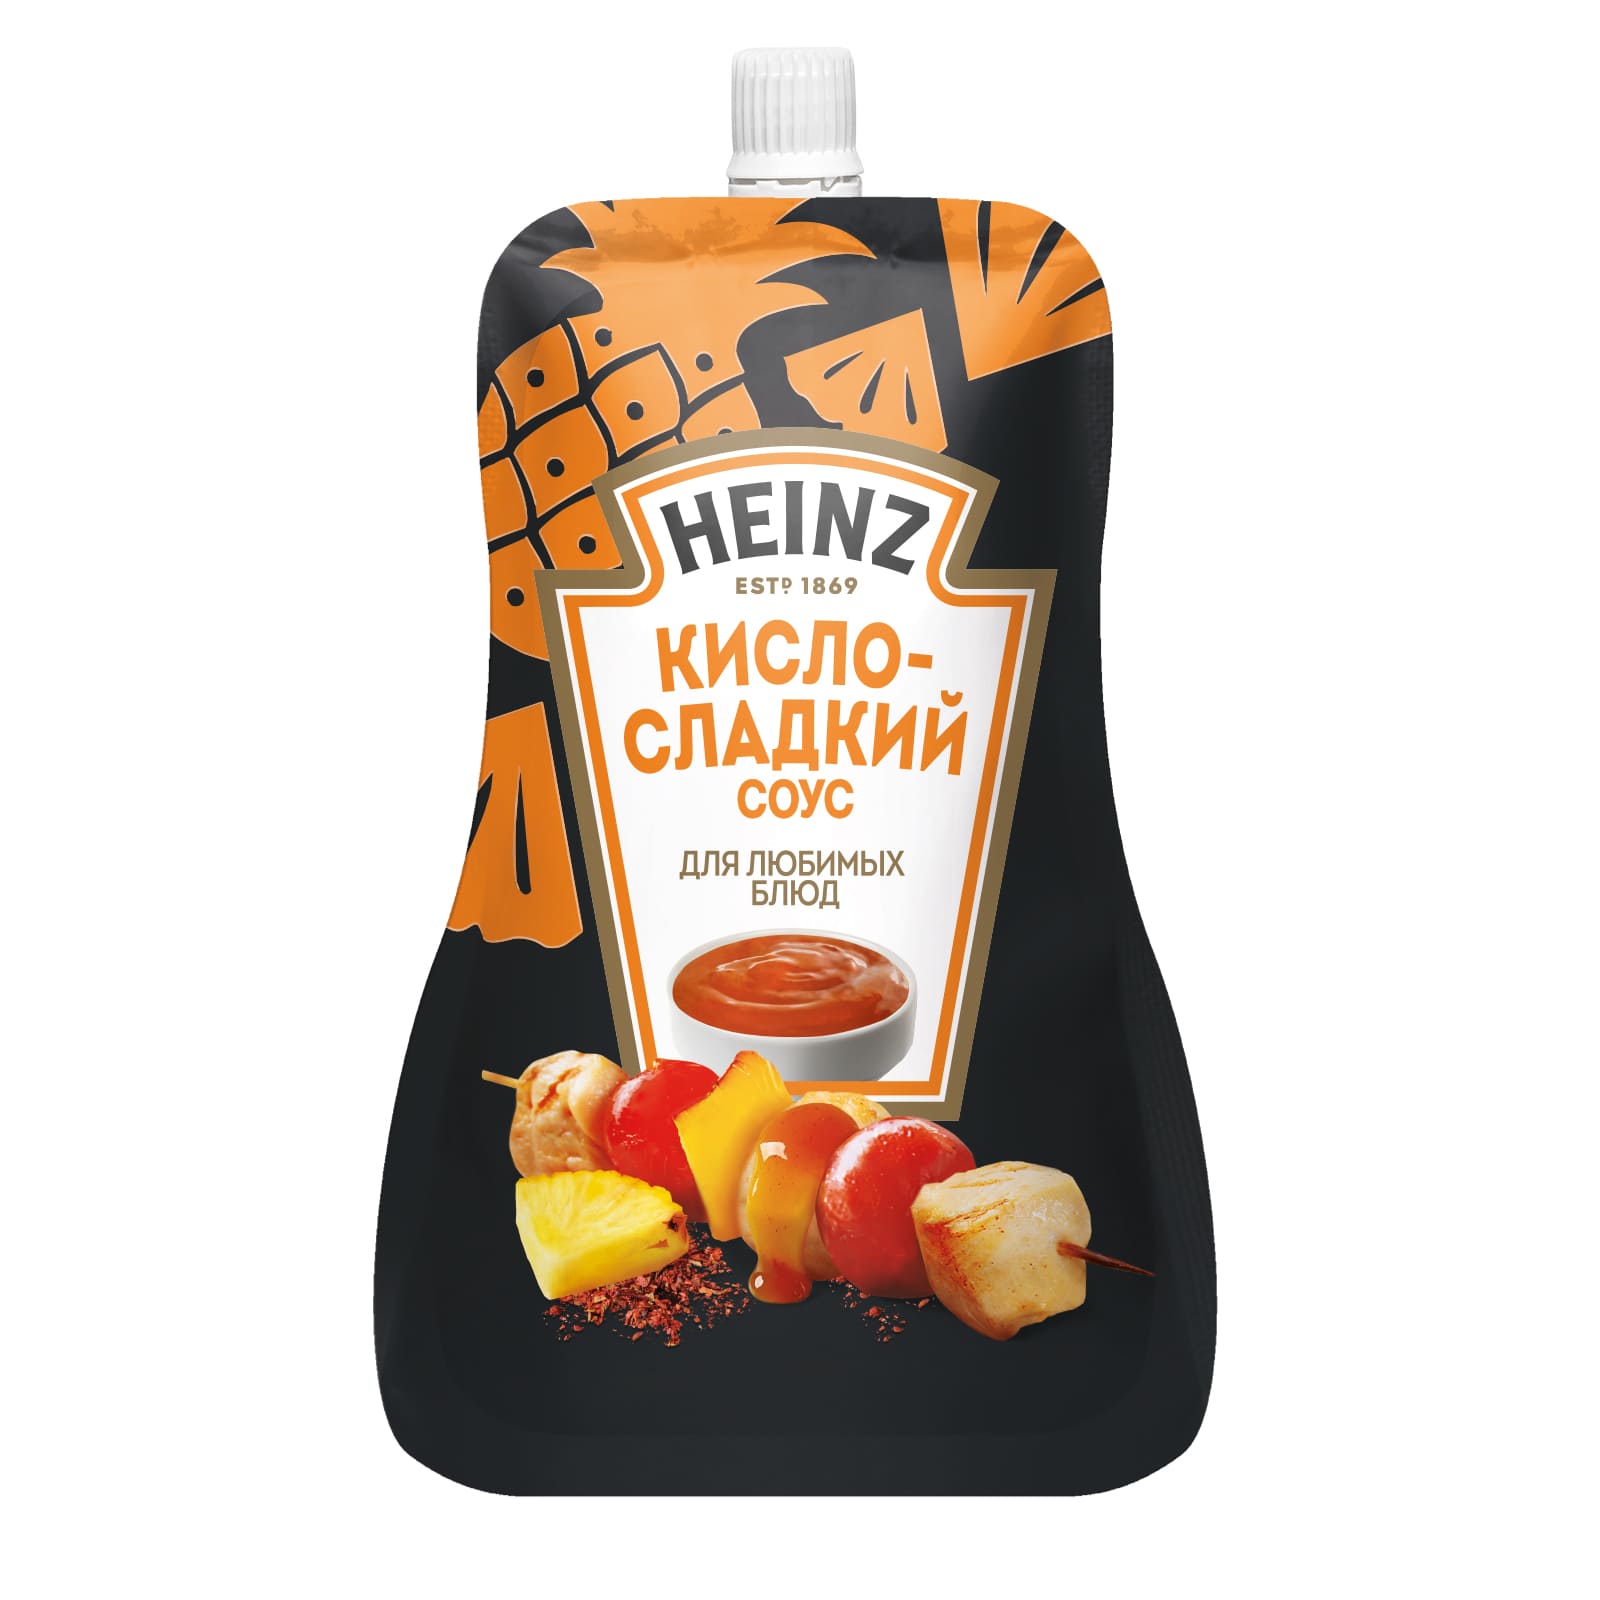 Купить соус Heinz кисло-сладкий, 200 г, цены на Мегамаркет | Артикул: 100050477629